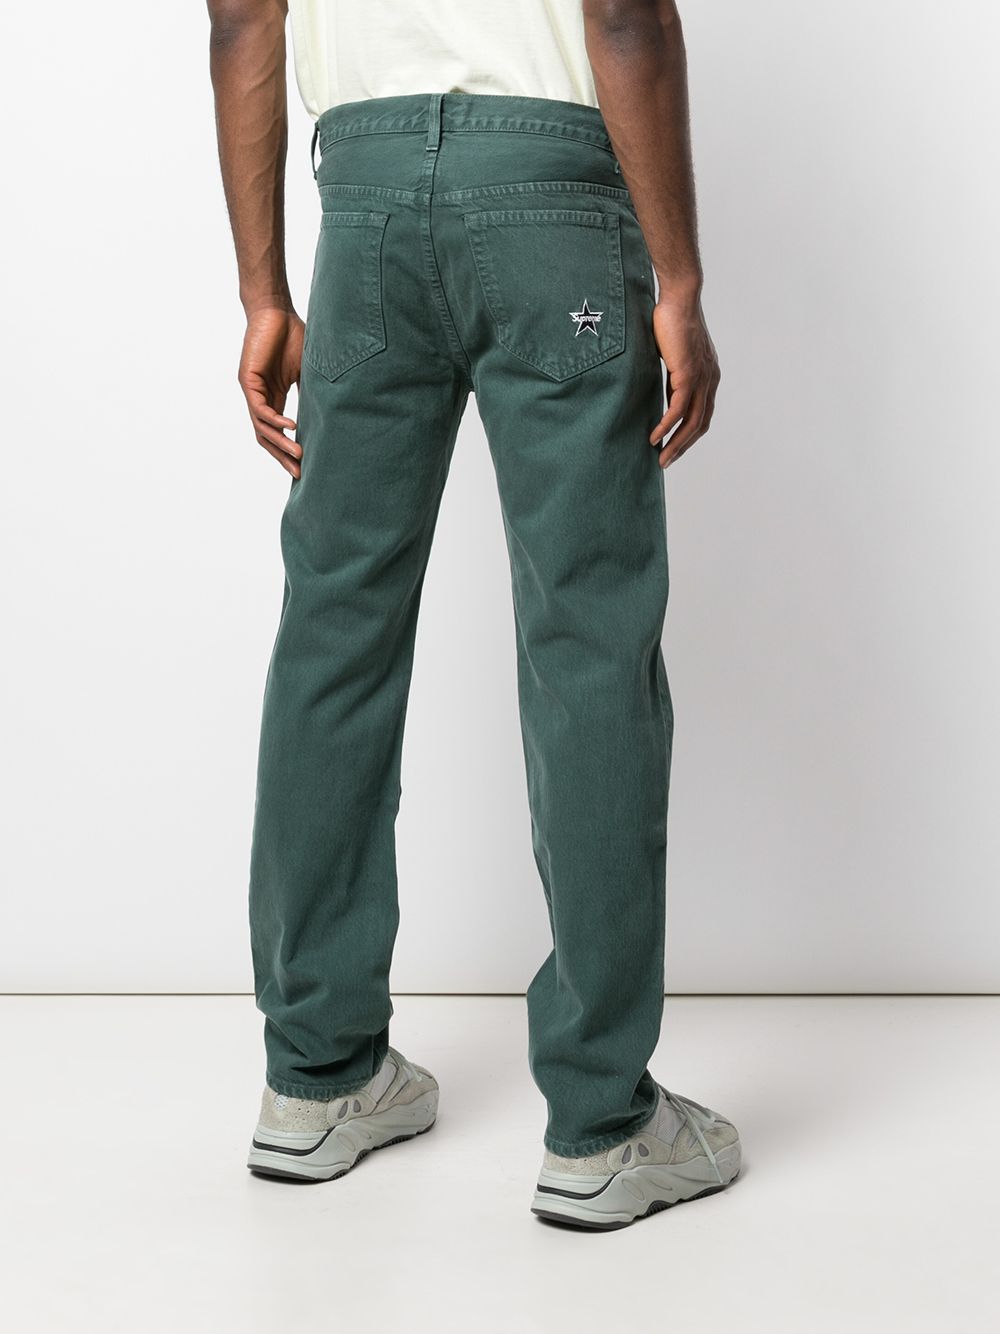 фото Supreme джинсы стандартной длины